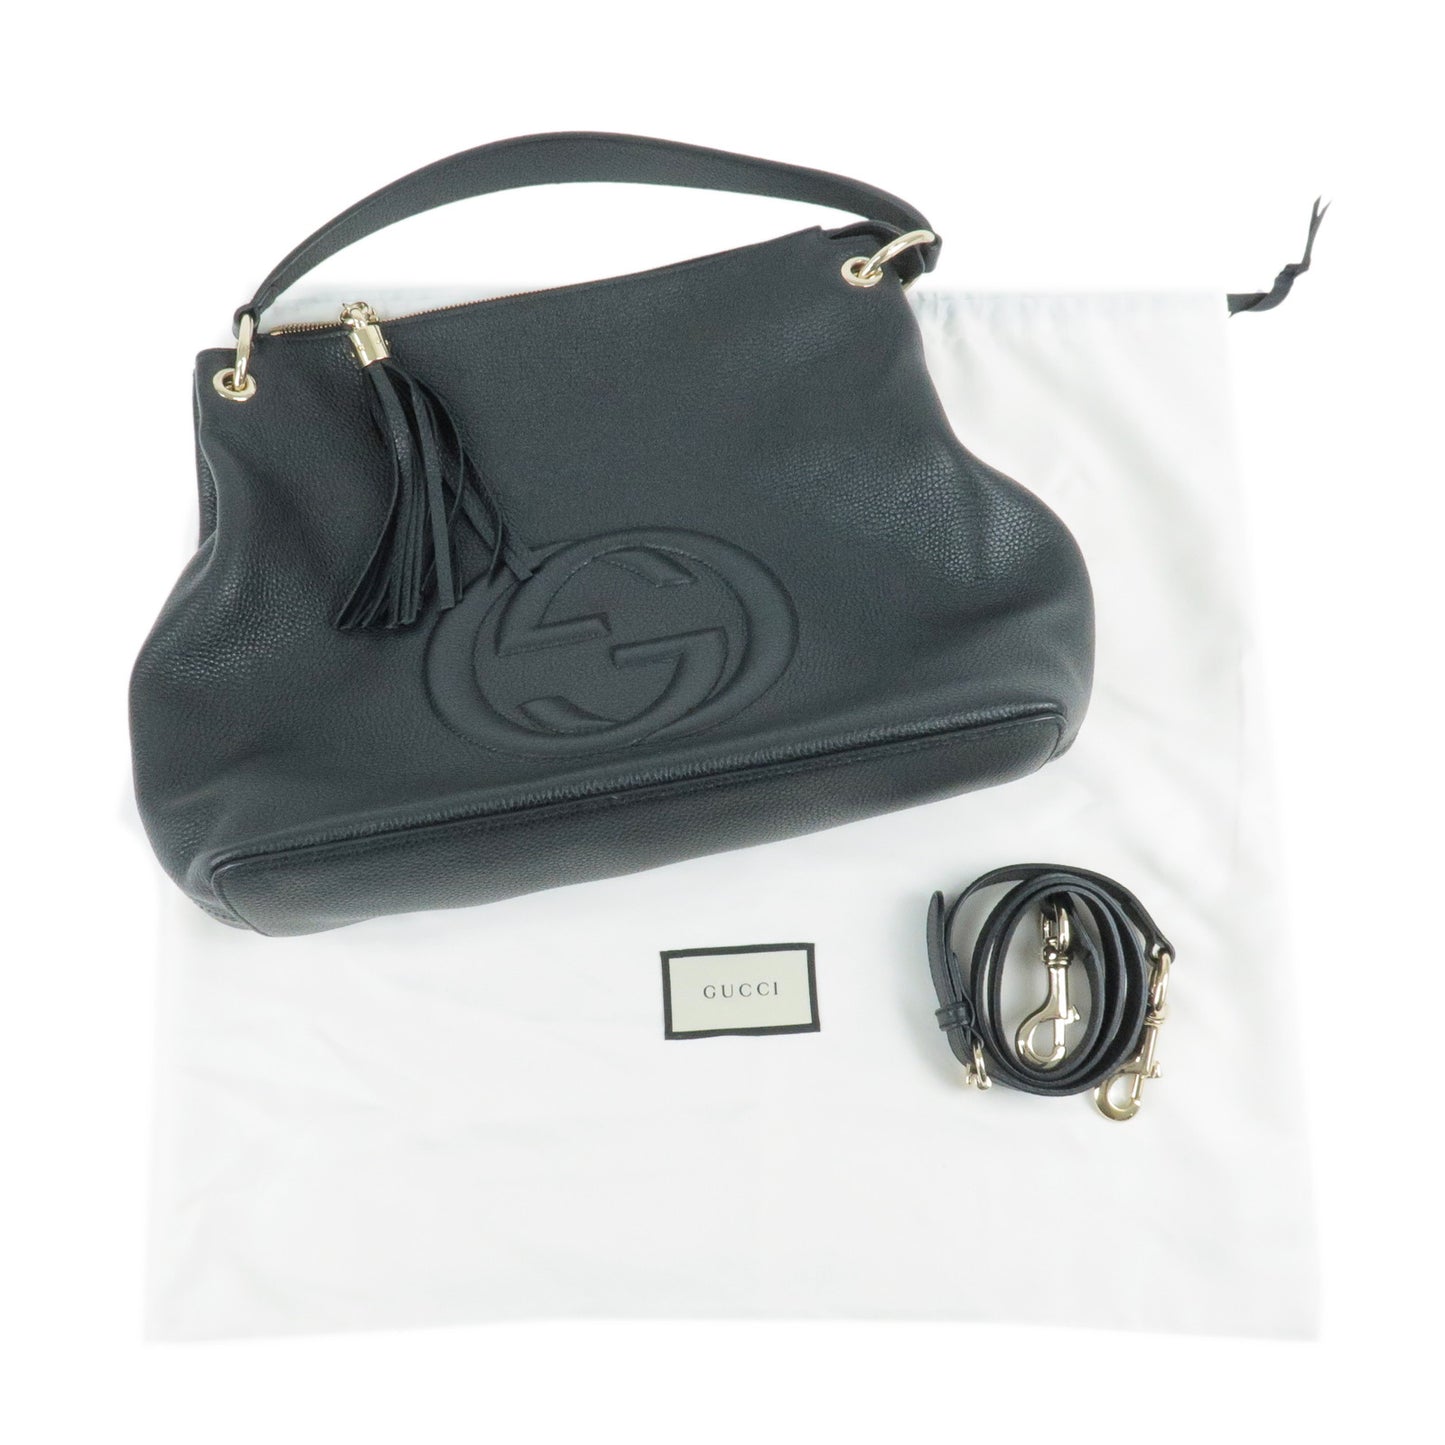 GUCCI SOHO Leather Shoulder Bag 2Way Bag Black 536194